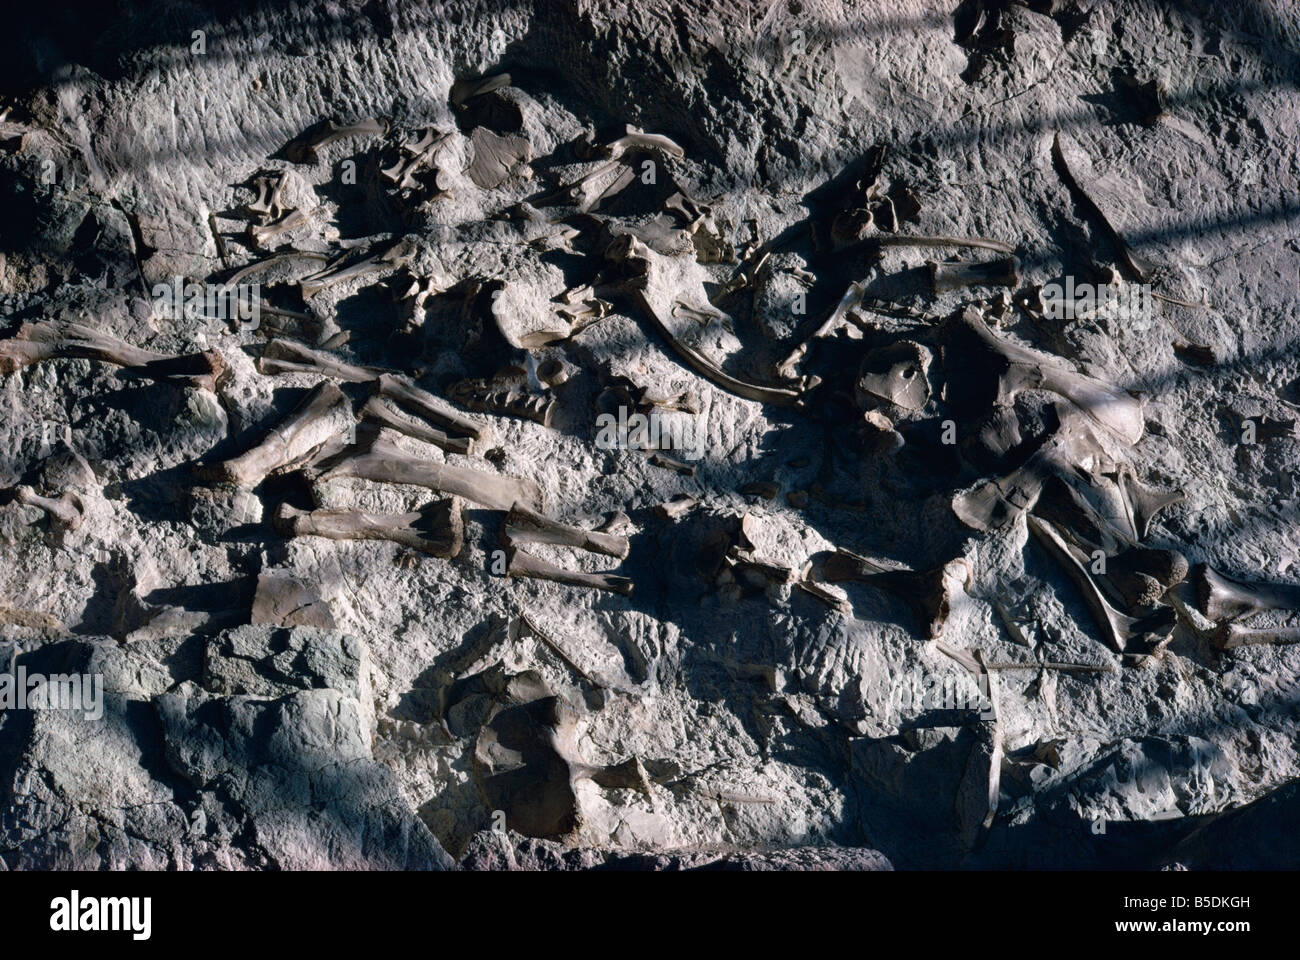 Des os de dinosaure Dinosaur National Park Utah et Colorado États-Unis d'Amérique Amérique du Nord Banque D'Images